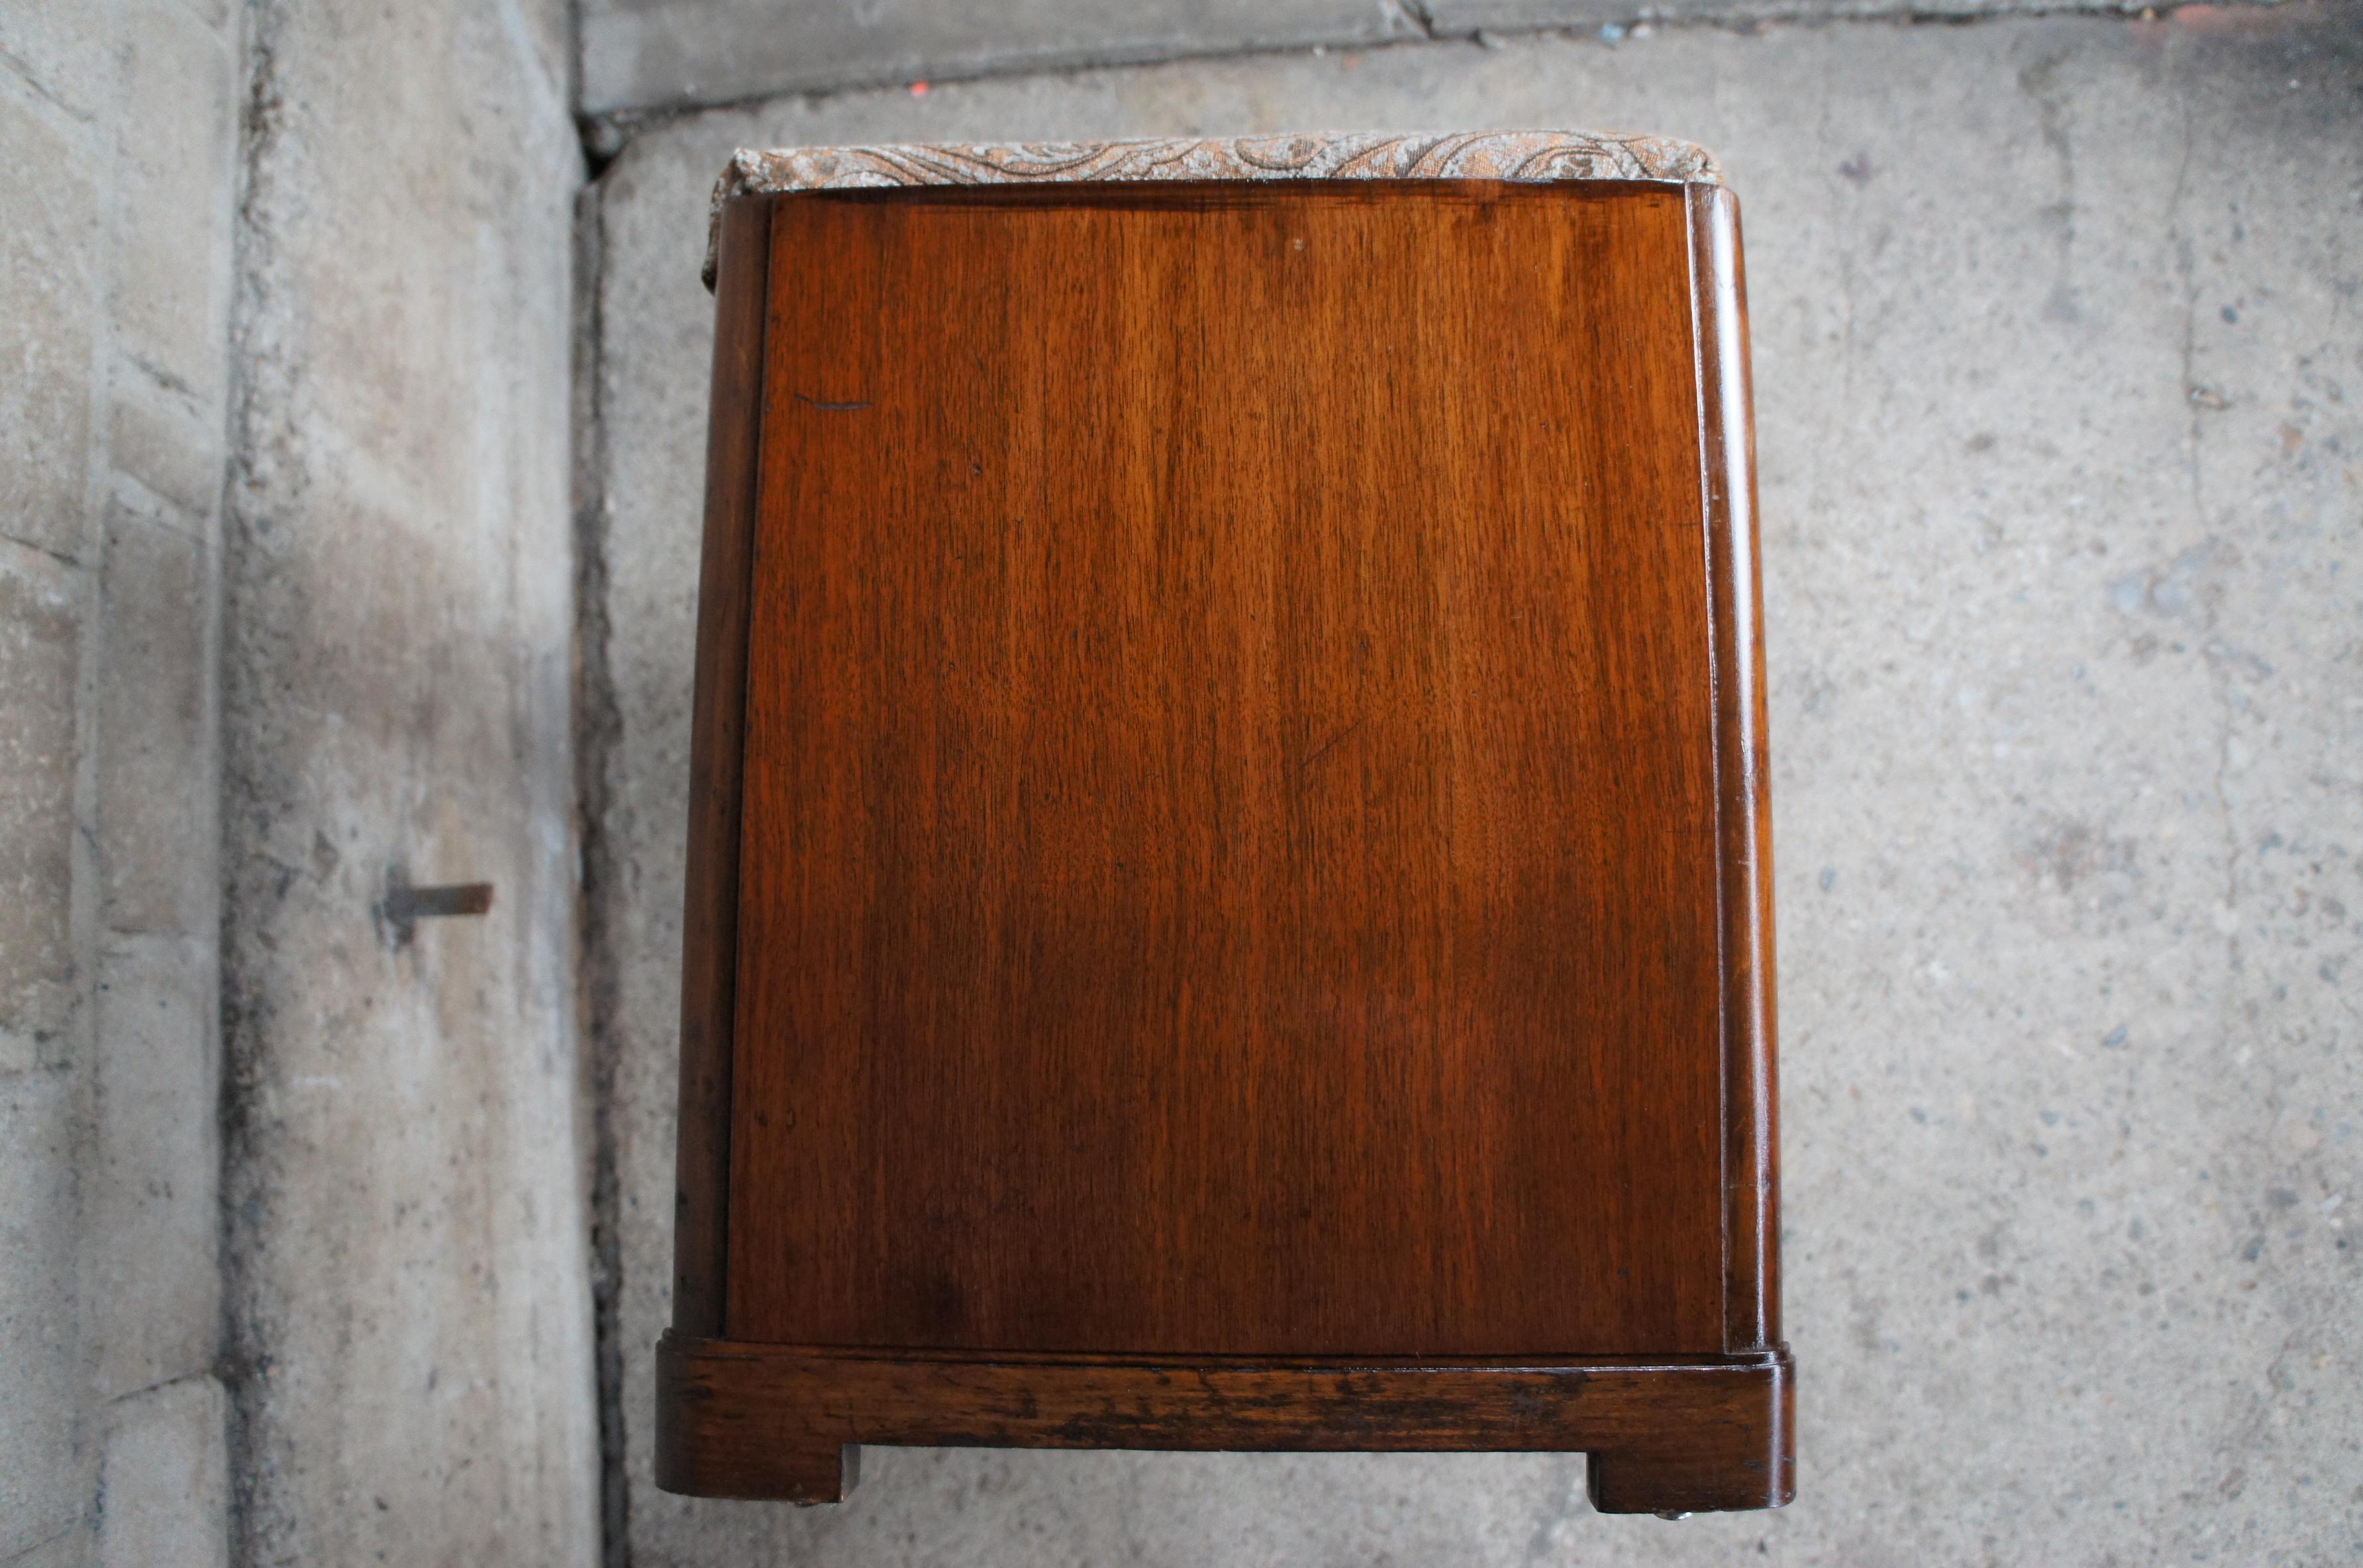 Art Deco Walnut Piano Foyer Window Bench W/ Storage Paisley Fabric Vanity Stool 4